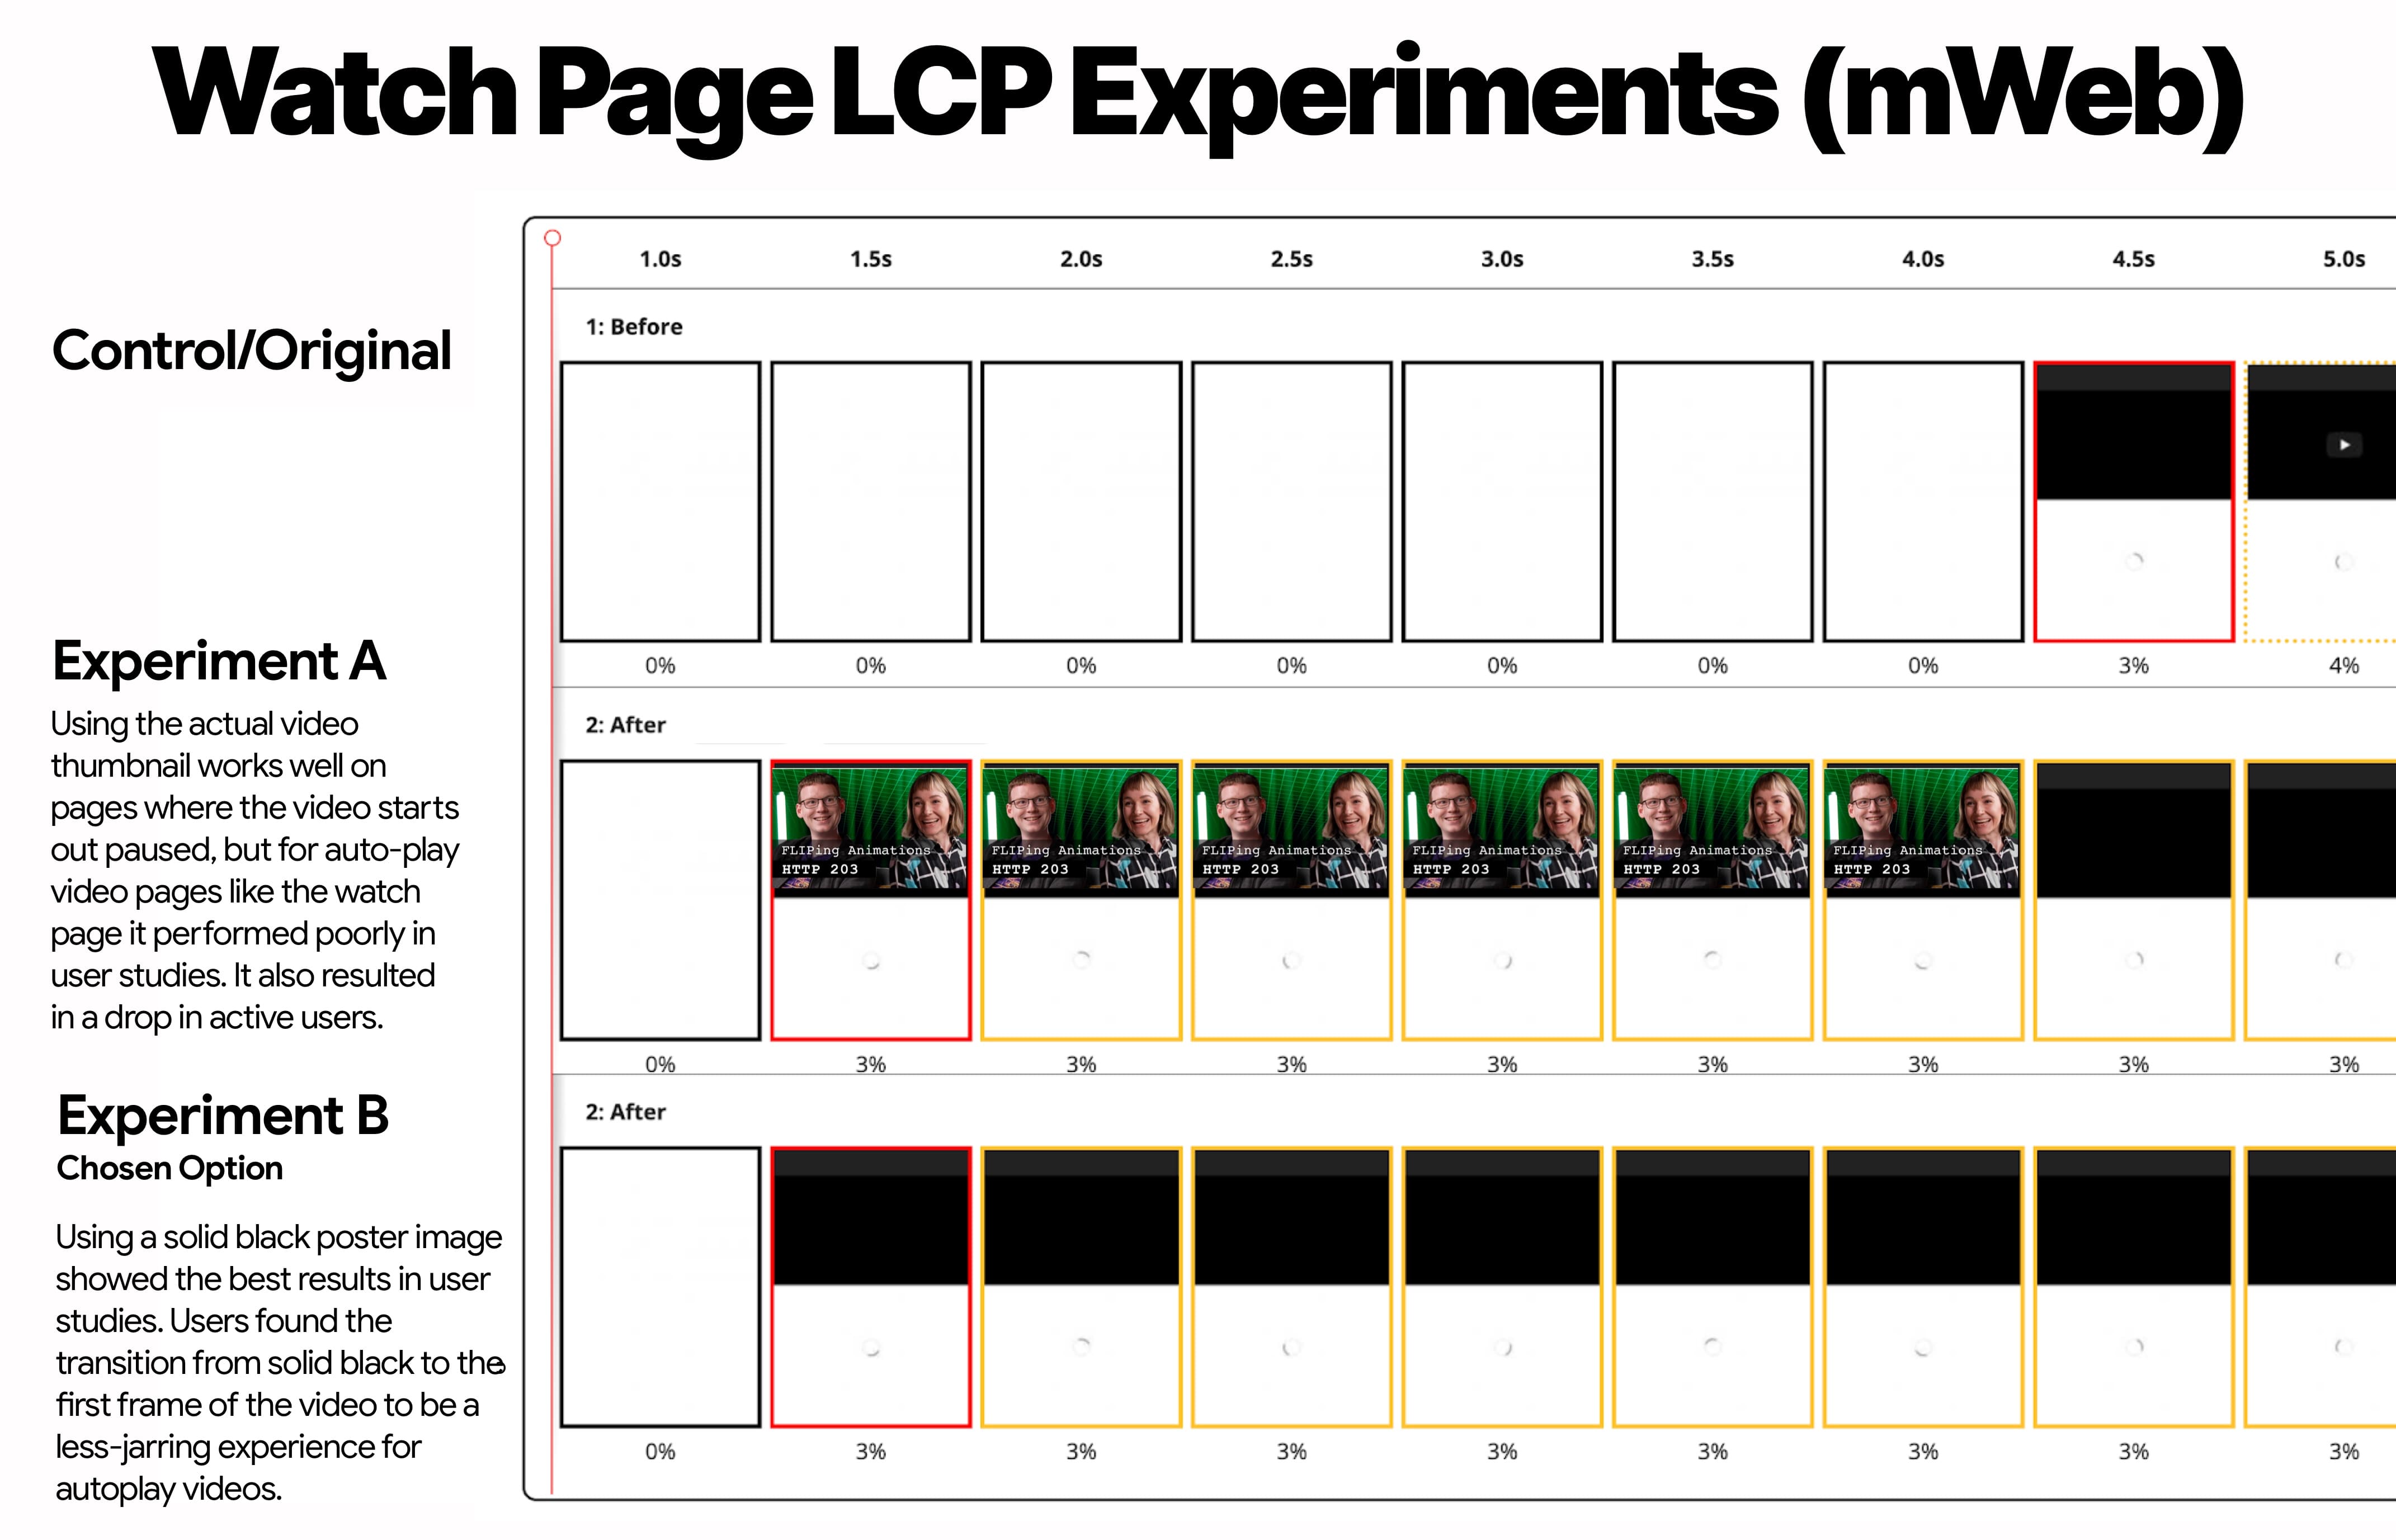 行動版網站 LCP 實驗，顯示控制組，實驗組 A (圖片縮圖) 和 B 實驗 B (黑色縮圖)